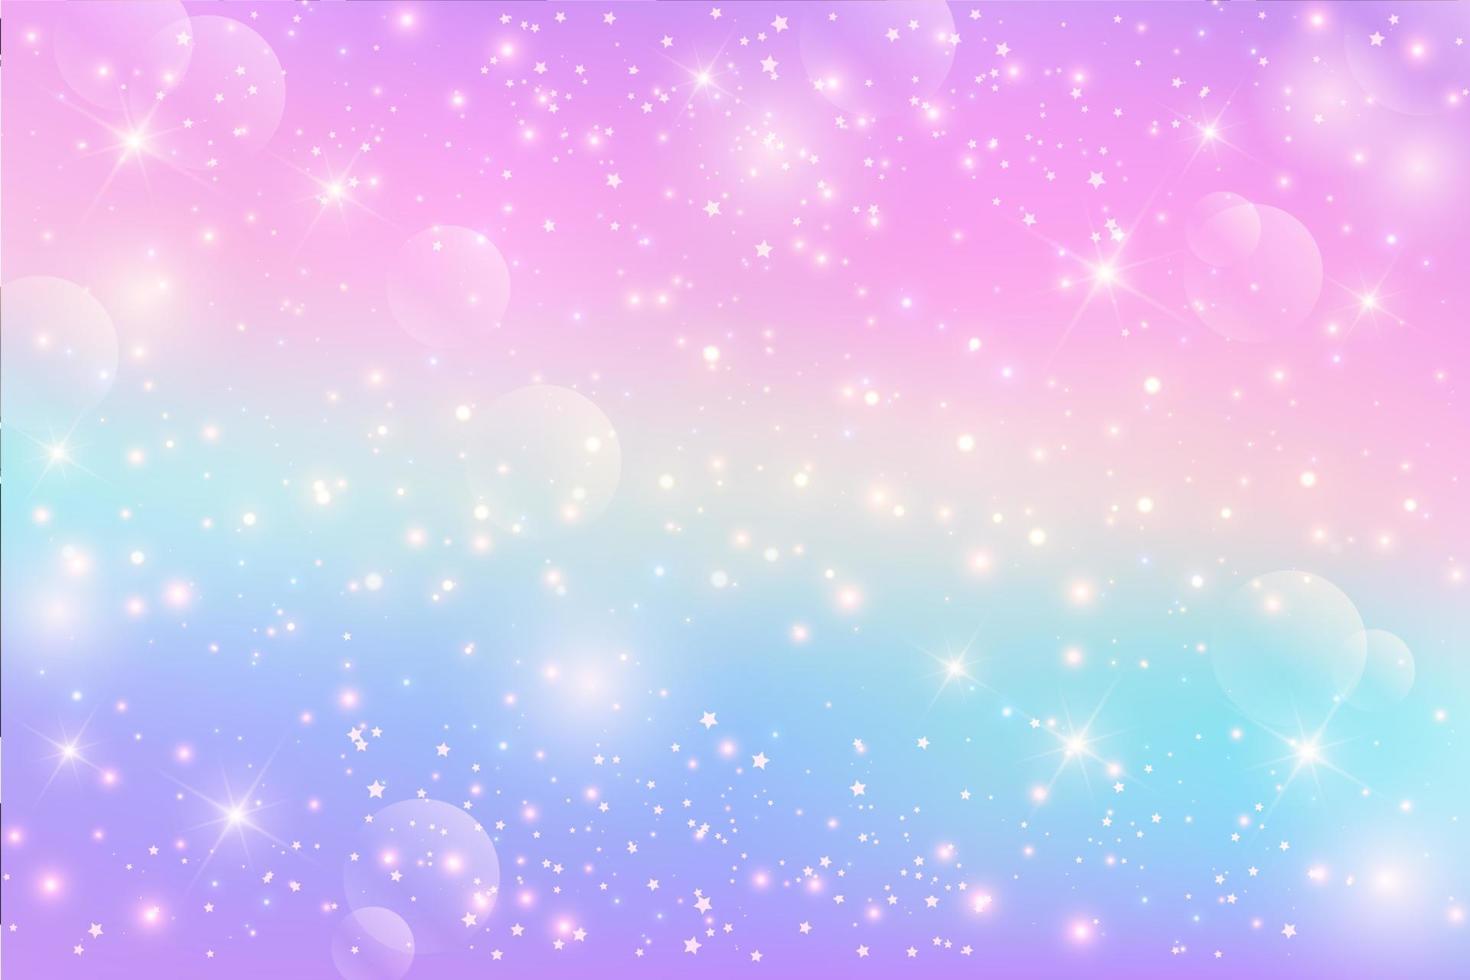 fond fantaisie licorne arc-en-ciel avec des étoiles. illustration holographique aux couleurs pastel. ciel multicolore lumineux. vecteur. vecteur